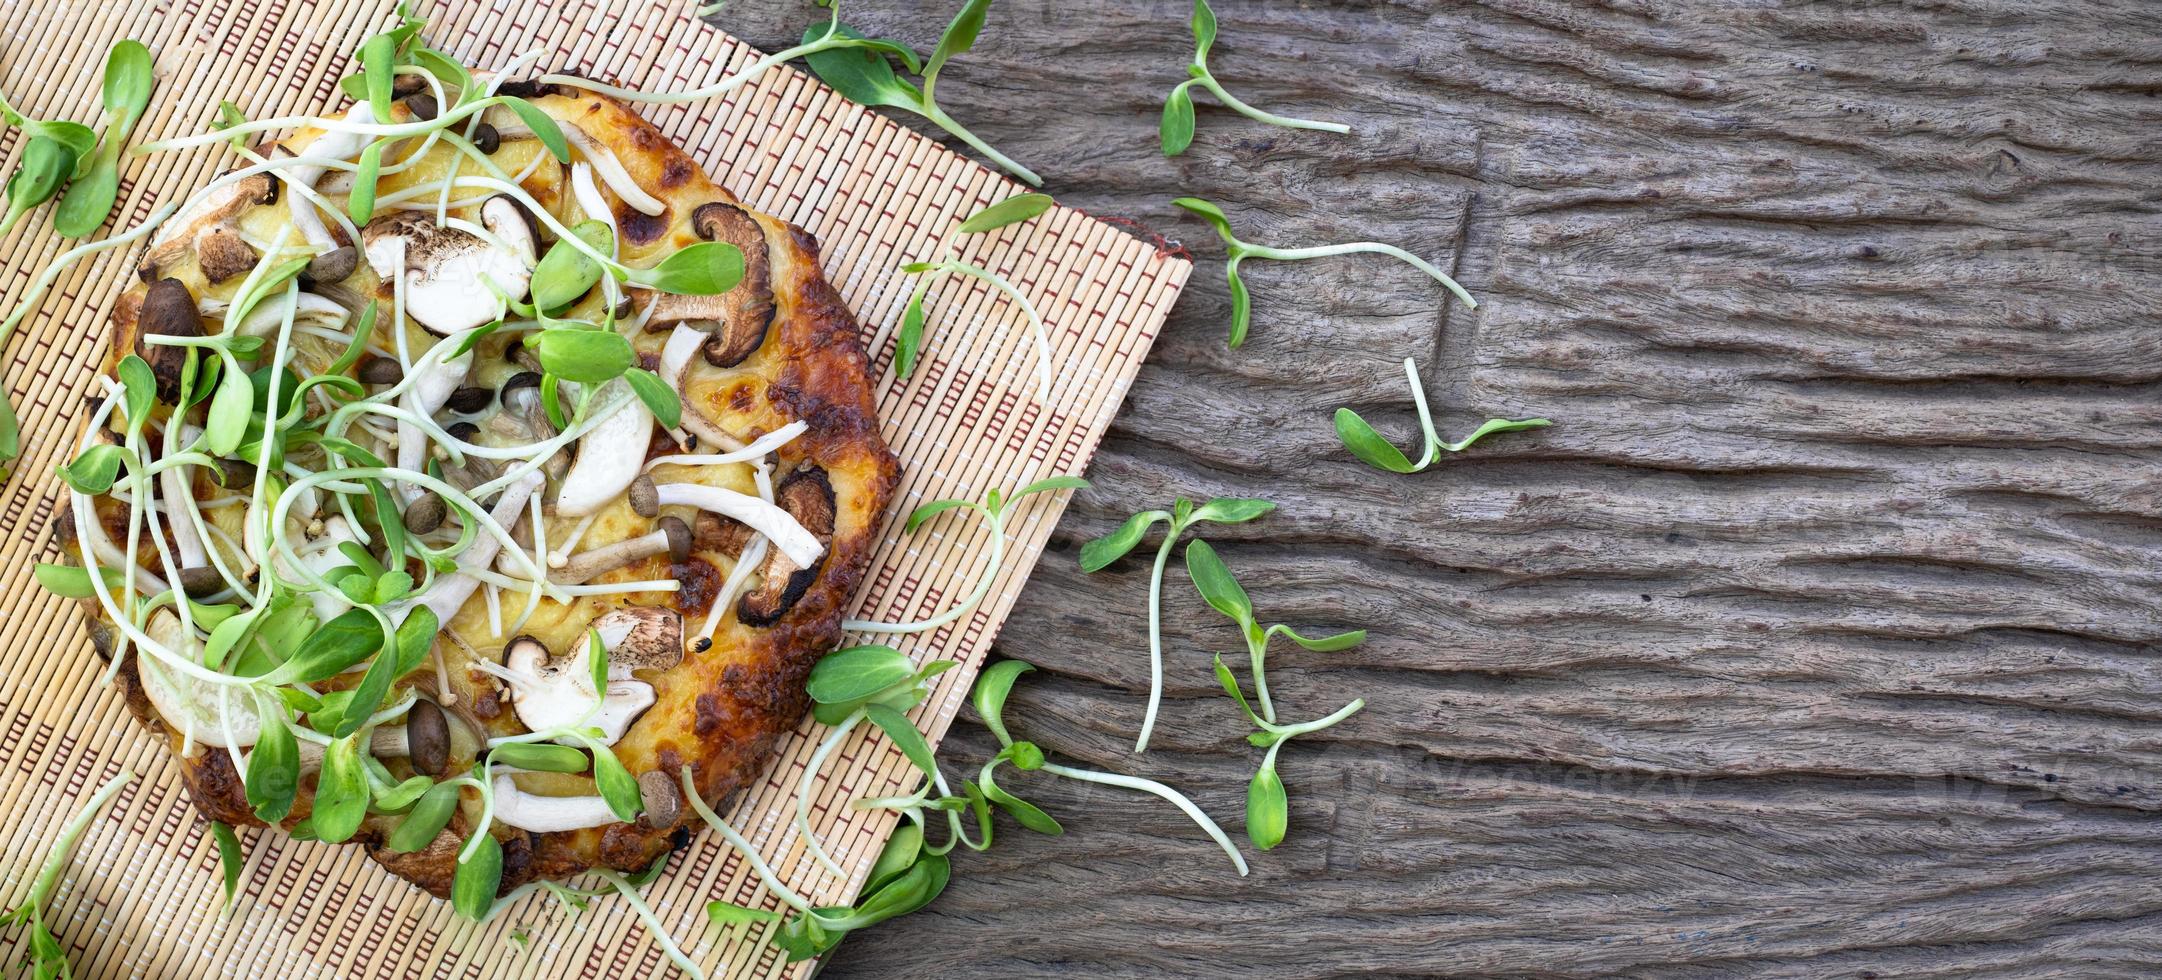 zelfgemaakte vegetarische pizza met zonnebloem spruiten op een houten tafel achtergrond foto